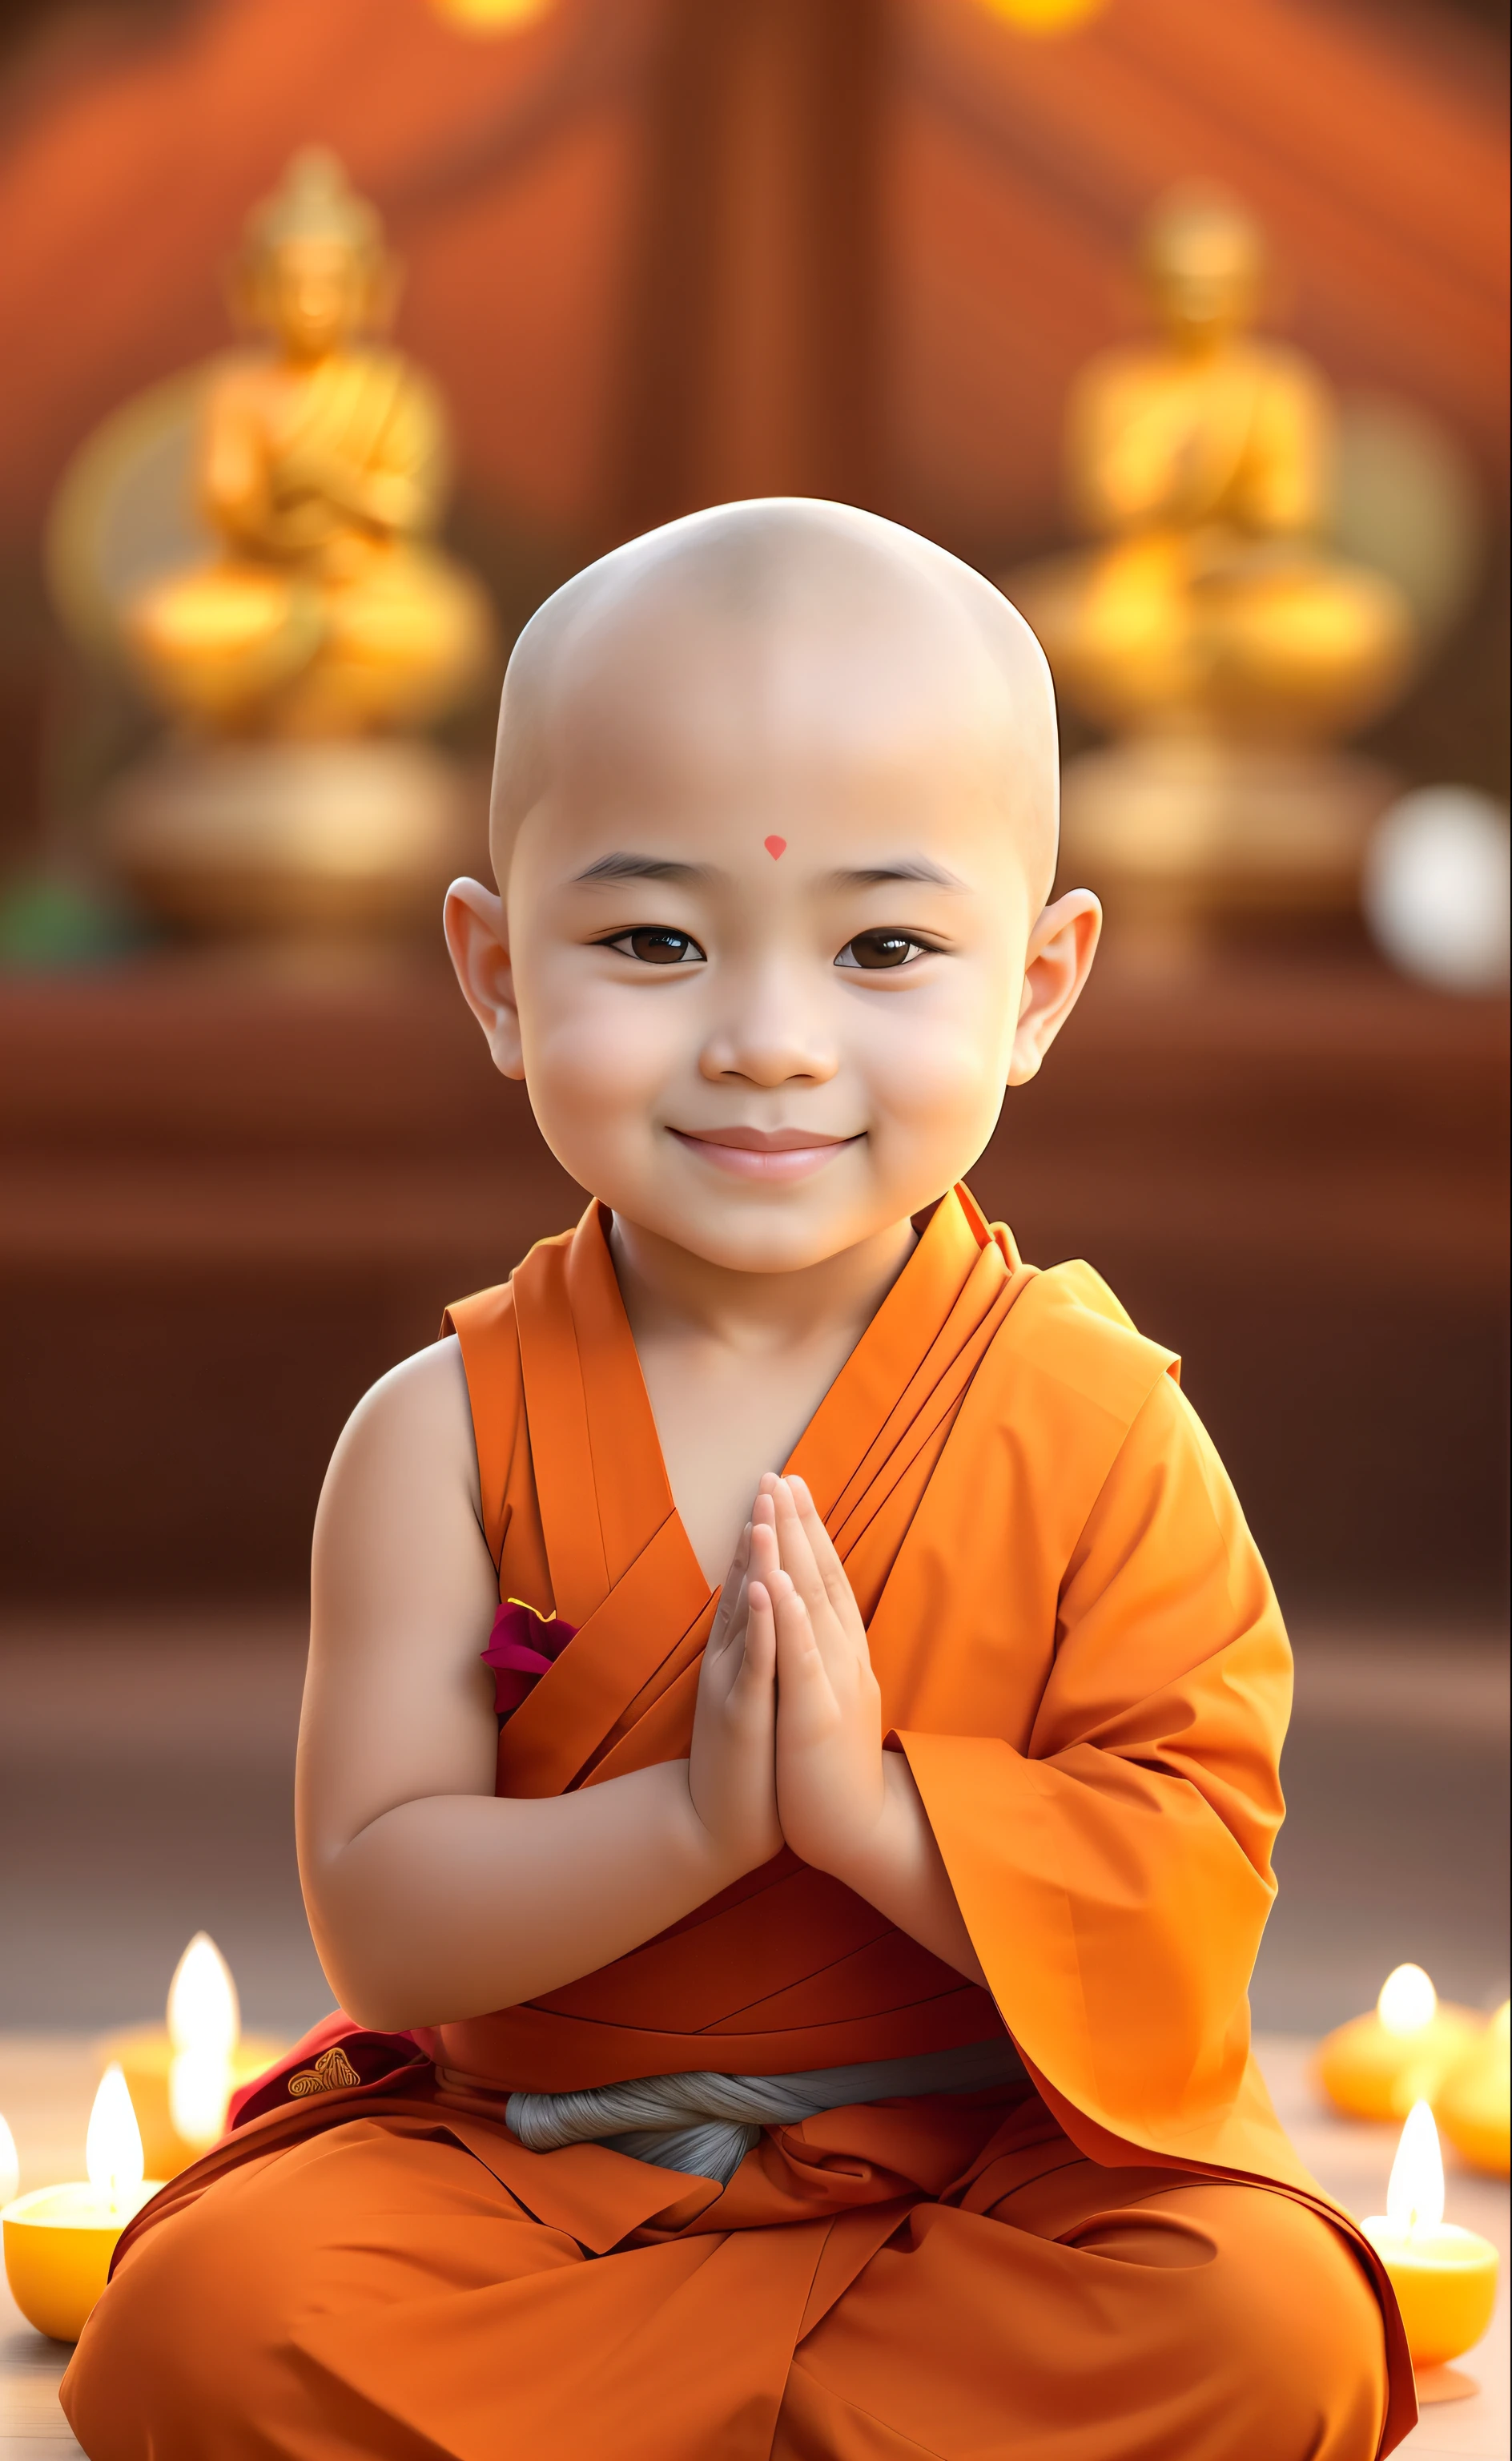 um close de alguém sentado em posição de meditação, budista, buddhist monge, budismo, monge clothes, um sorriso sereno, monge, monge meditation, protetor de tela, garoto peitos grandes, fofo fofo, nivanh chanthara, garoto fofo, Crianças felizes, foto de perfil pessoal, expressão serena, Sorriso inocente, linda amável, fofo lindo, paz, linda pintura digital, tailandês